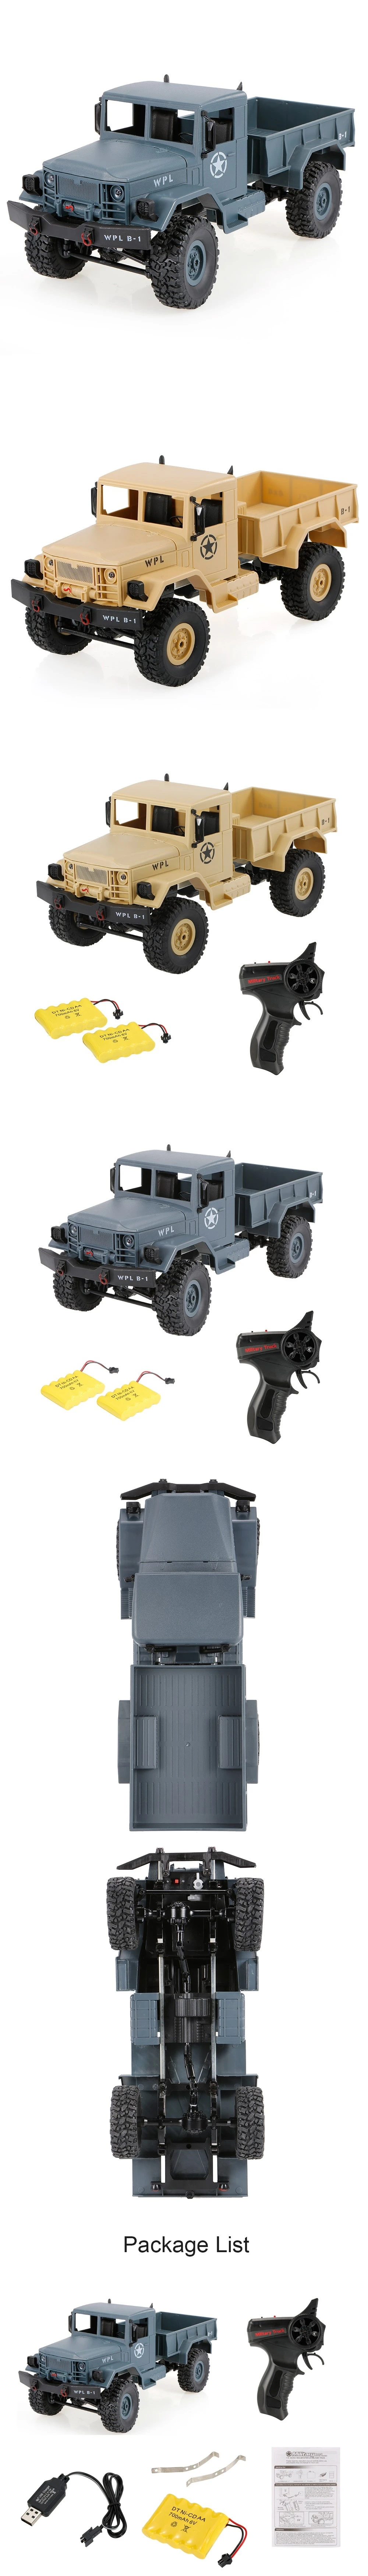 Радиоуправляемый Военный автомобиль игрушка внедорожный транспортер Дети X-mas подарок рок модель автомобиля военный грузовик игрушка RTR Игрушка Дети X-mas подарок